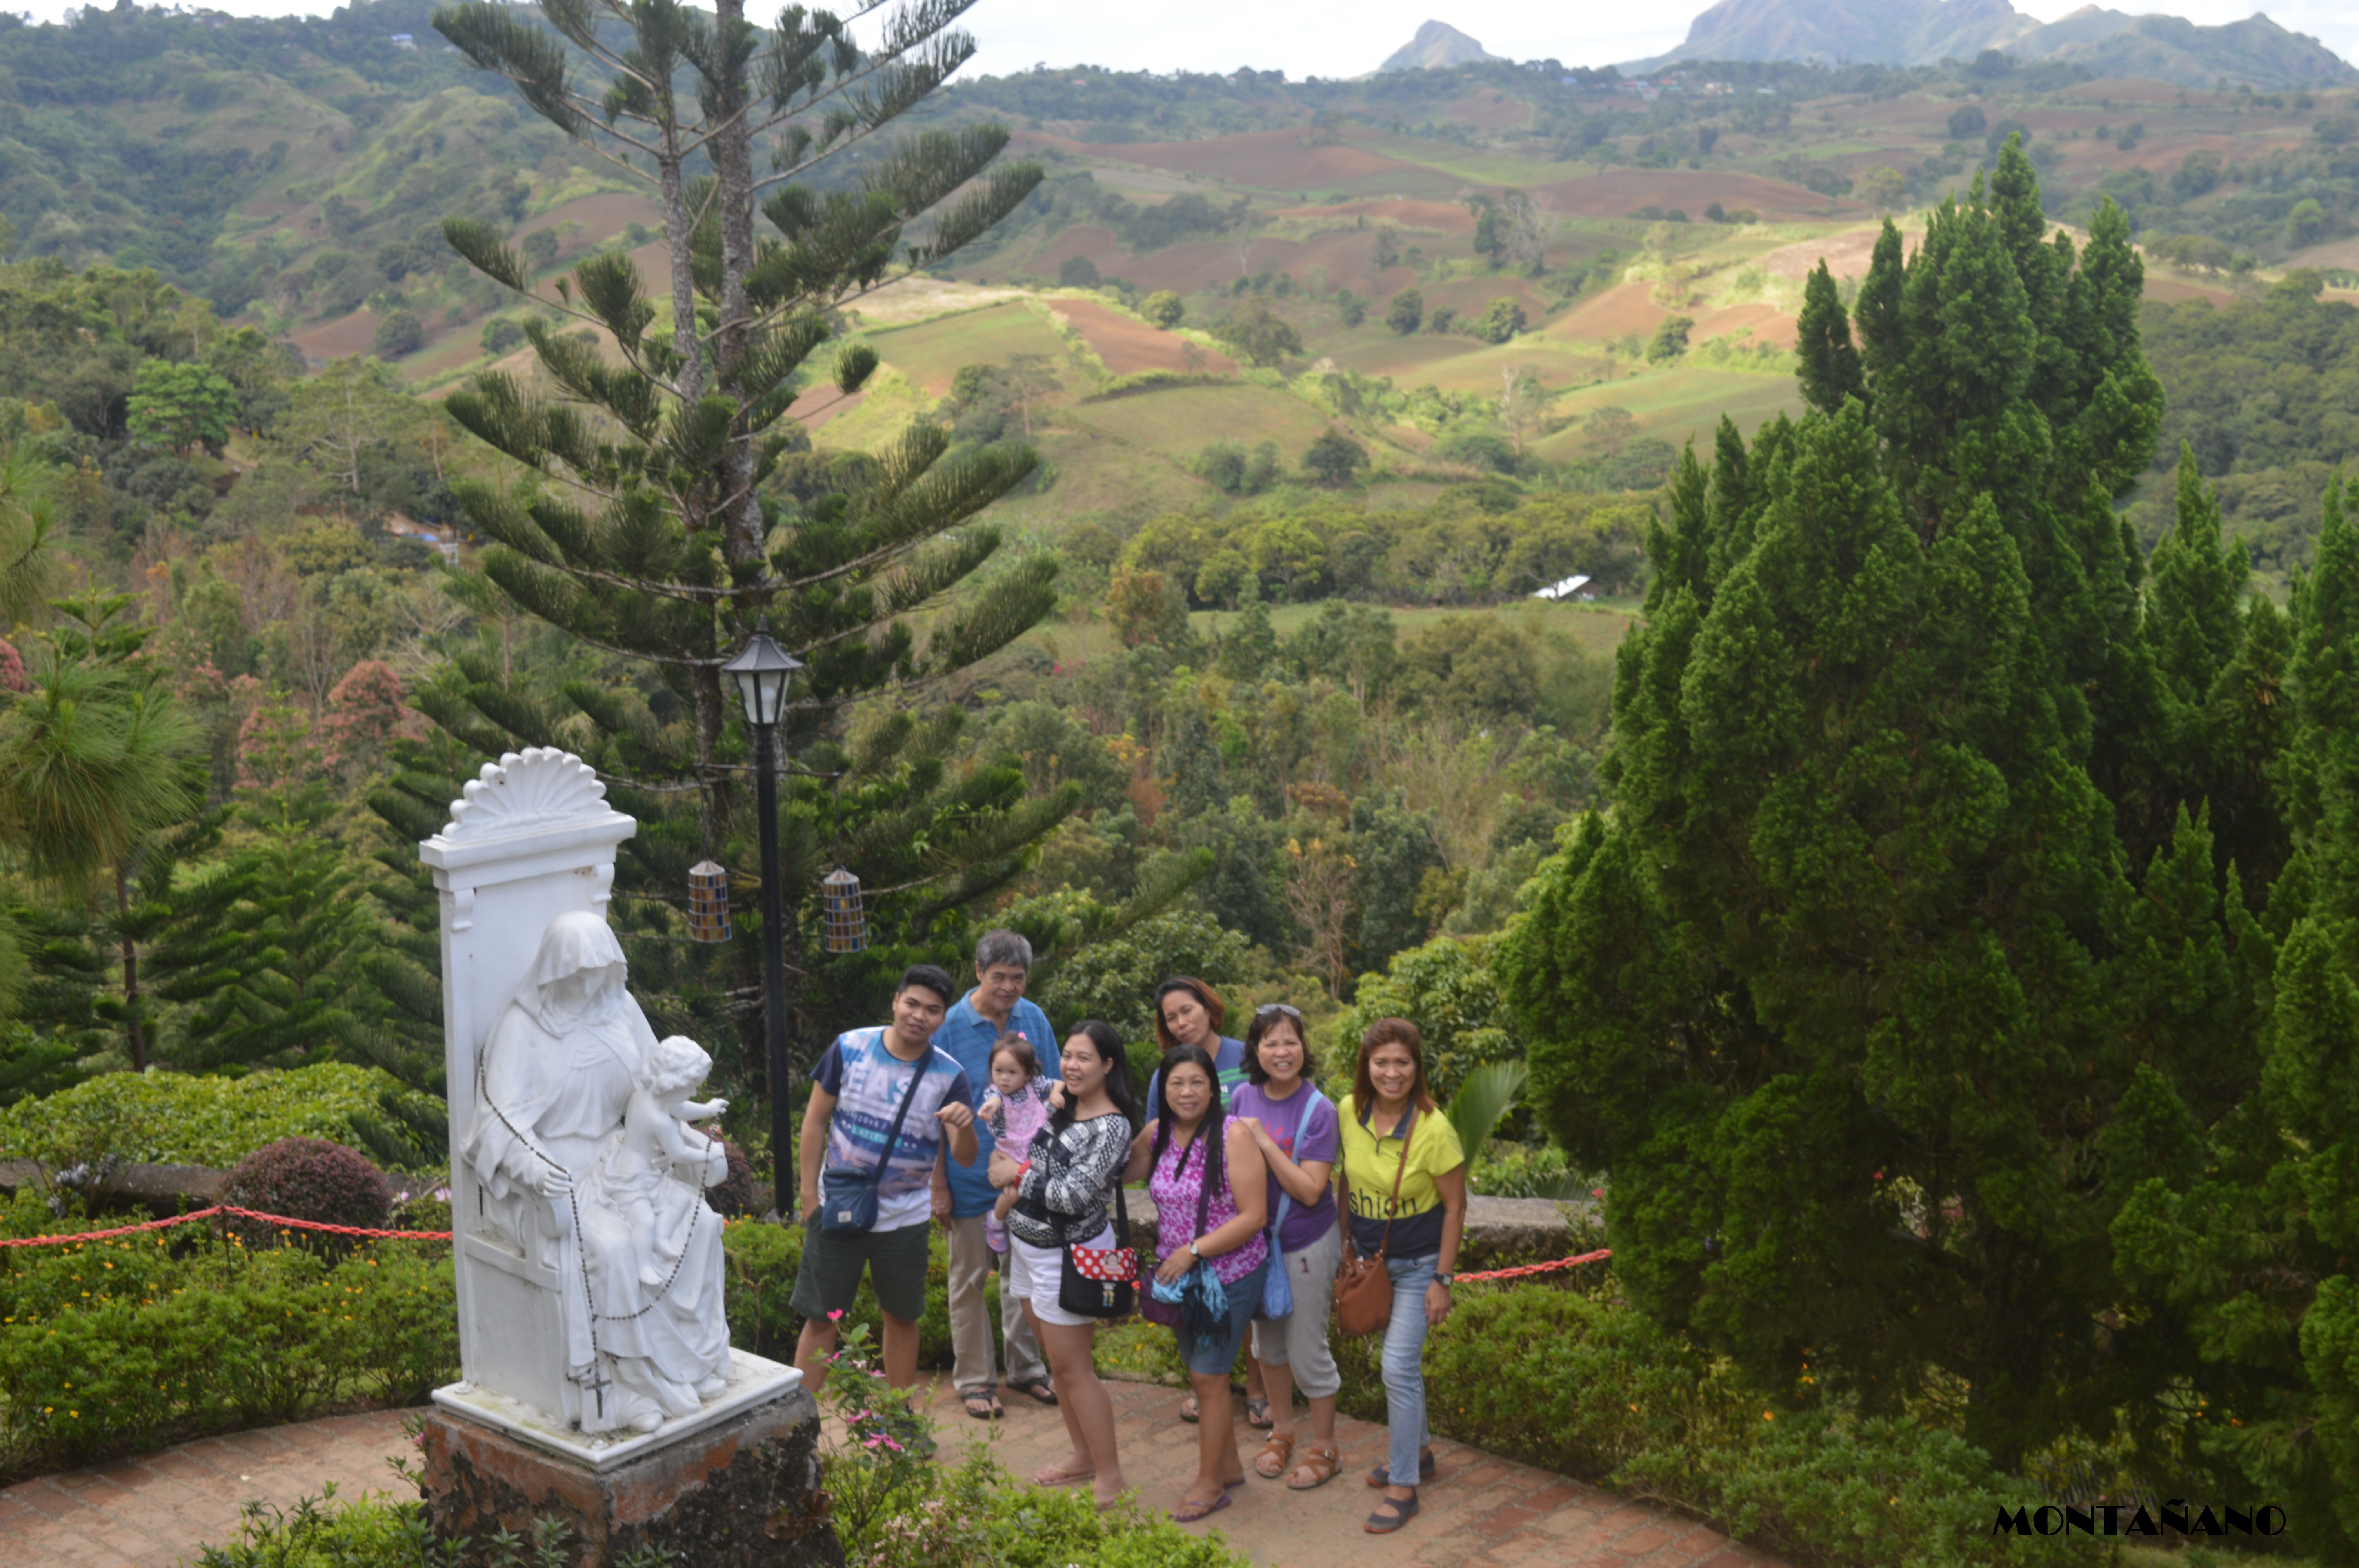 with my family at mountain view calaruega church compound nasugbu batangas near tagaytay